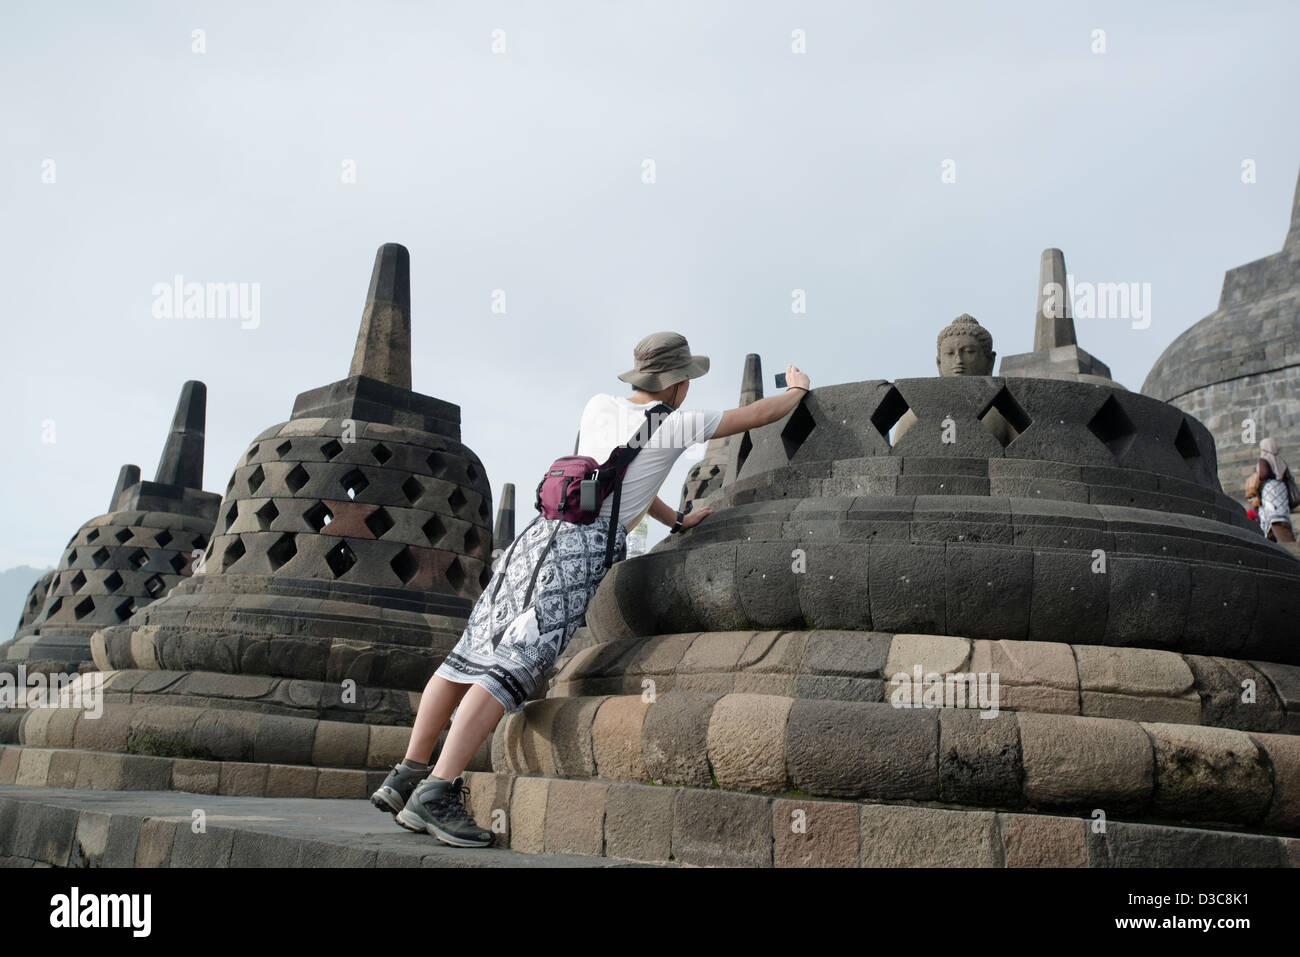 Ein Tourist nimmt ein Bild von einer Buddha-Statue im buddhistischen Tempel Borobudur auf Java, Indonesien Stockfoto